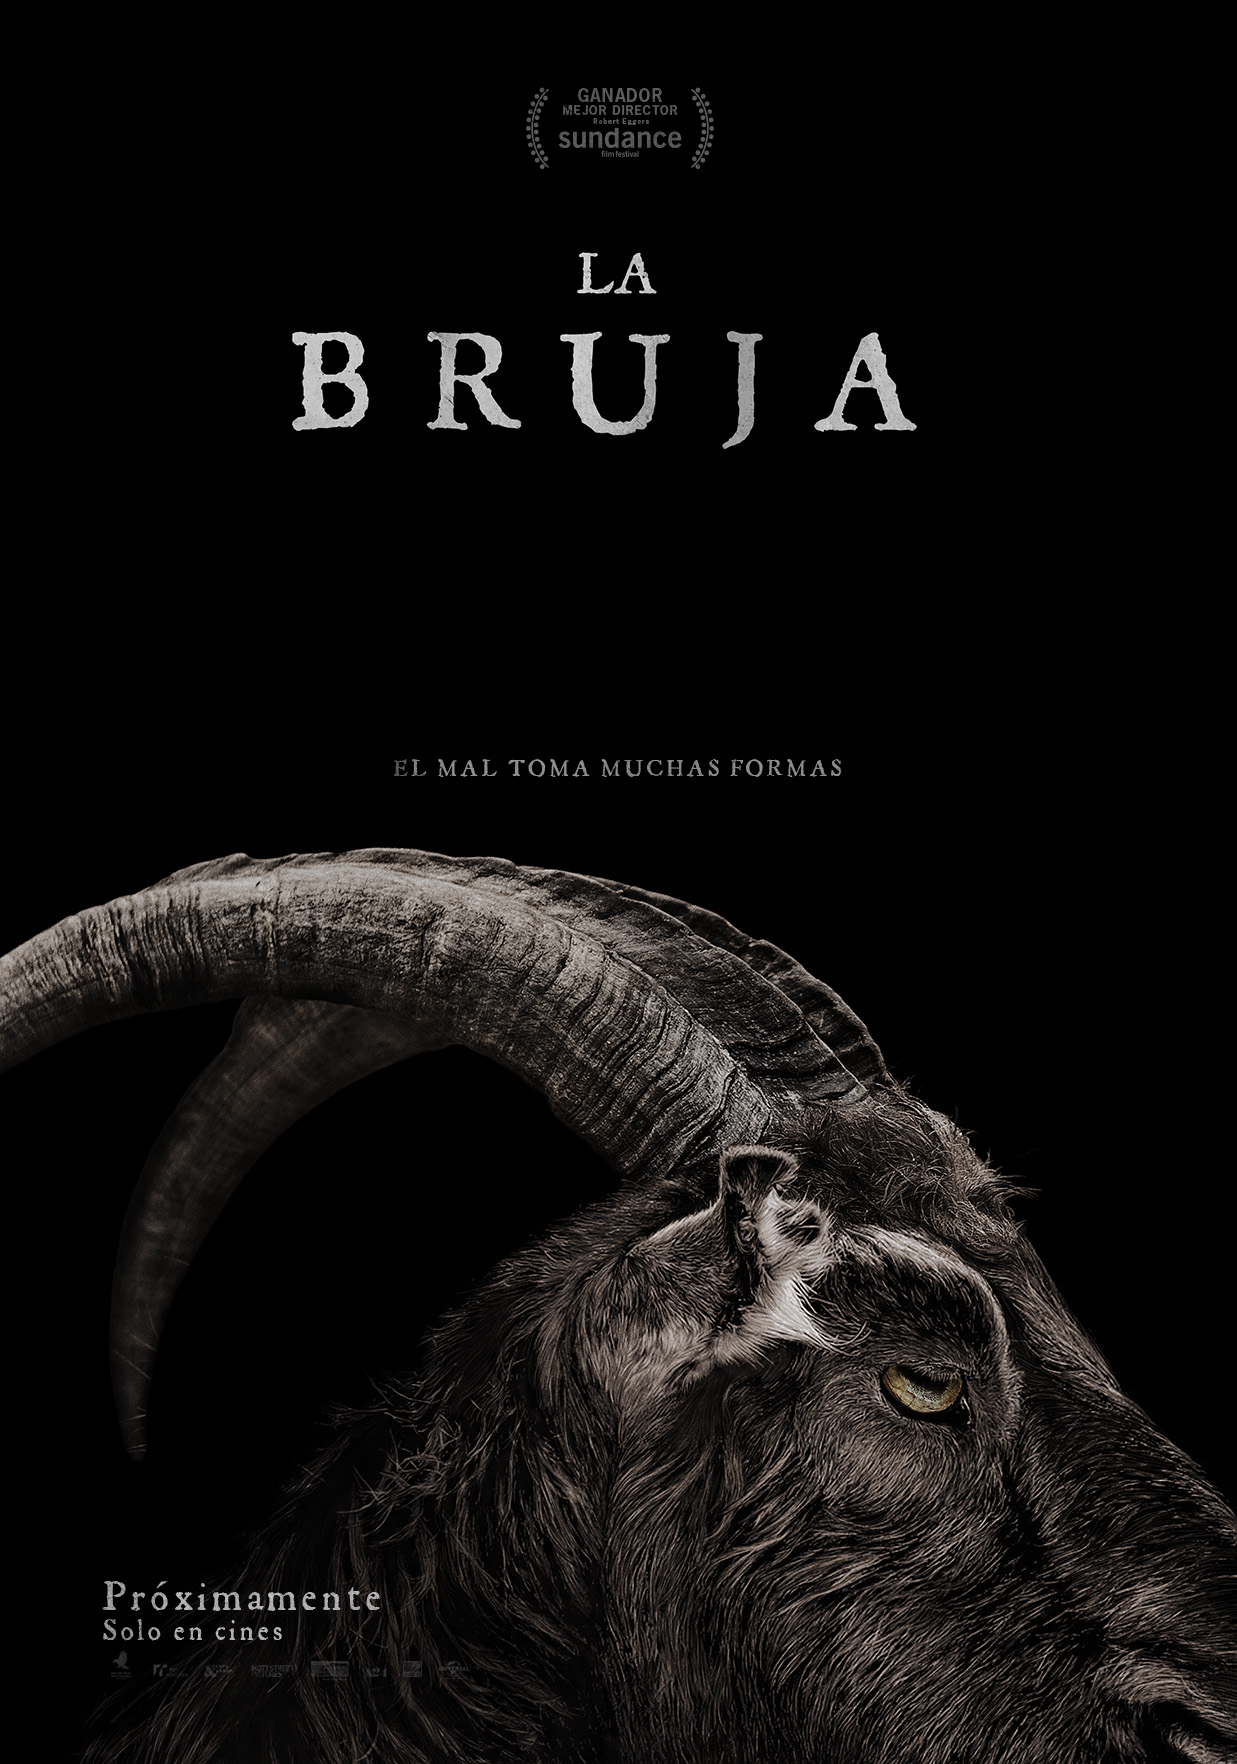 la-bruja-the-witch-poster-latino-espanol-mexico-terror-pelicula-2016-criticsight